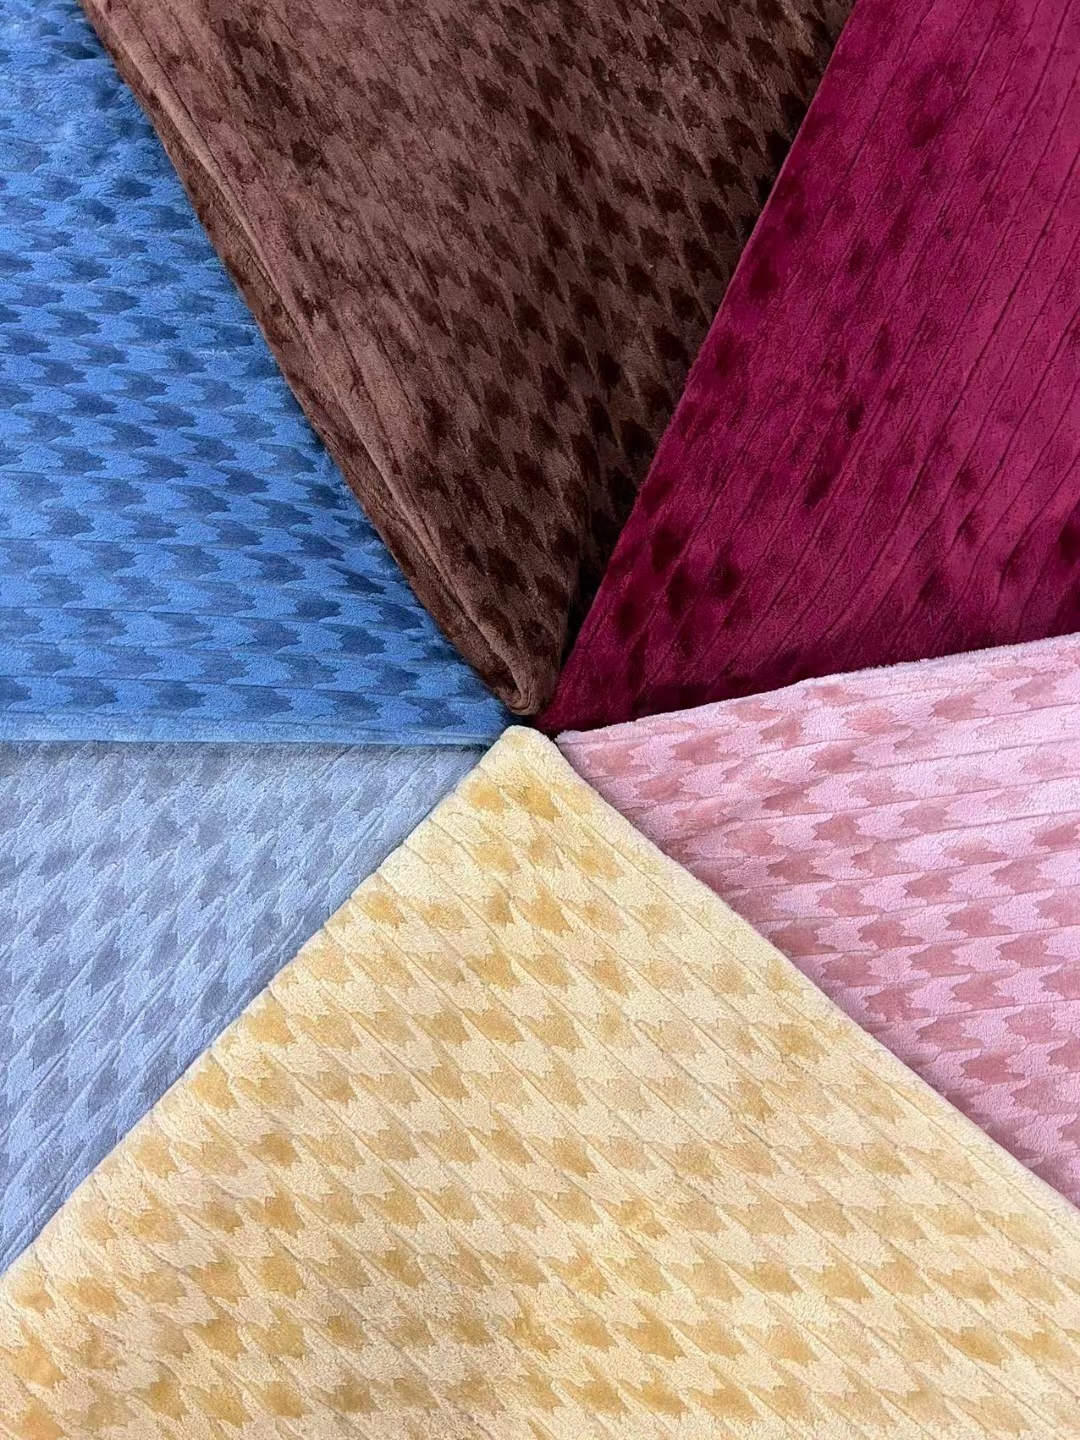 单层裸毯 毛毯 毯子 手感舒适 颜色多样可选6